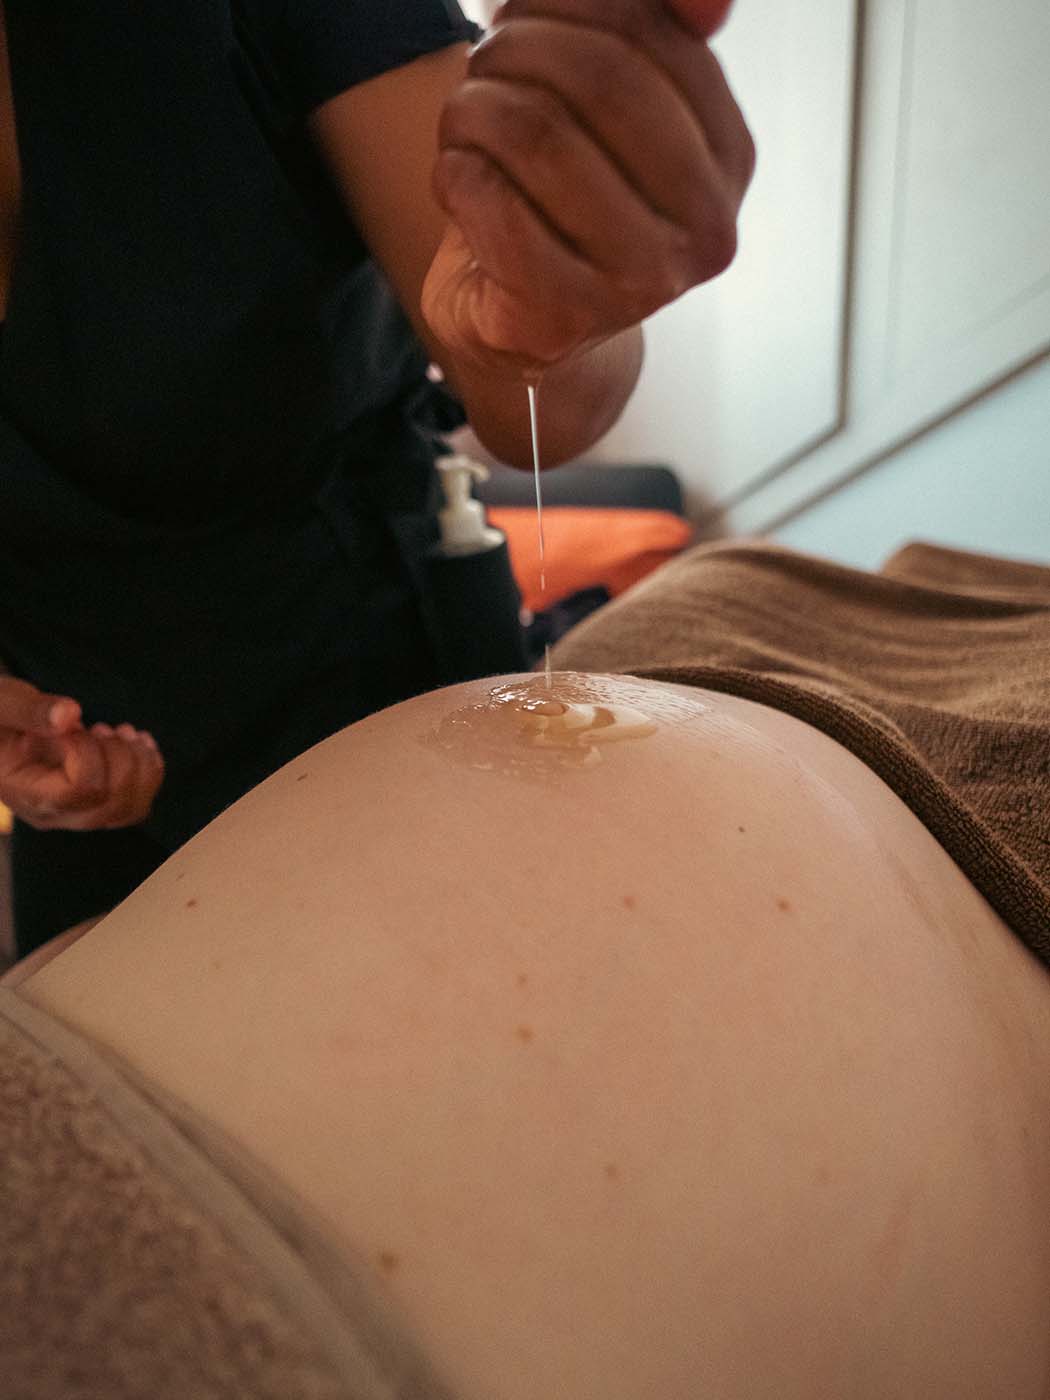 La masseuse verse du creux de sa main de l'huile sur le ventre d'une femme enceinte pour démarrer le massage